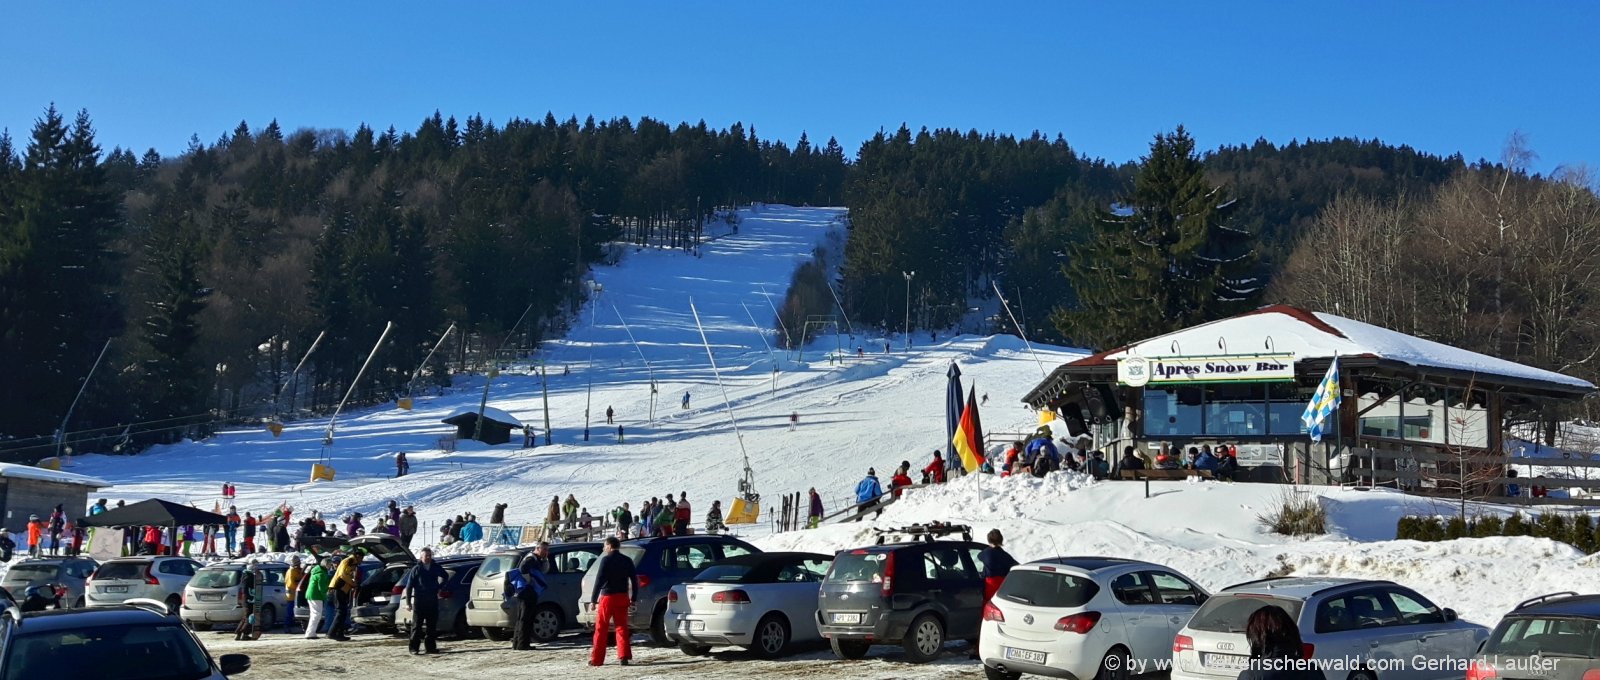 gasthof-winterurlaub-bayerischer-wald-skifahren-eck-skigebiet